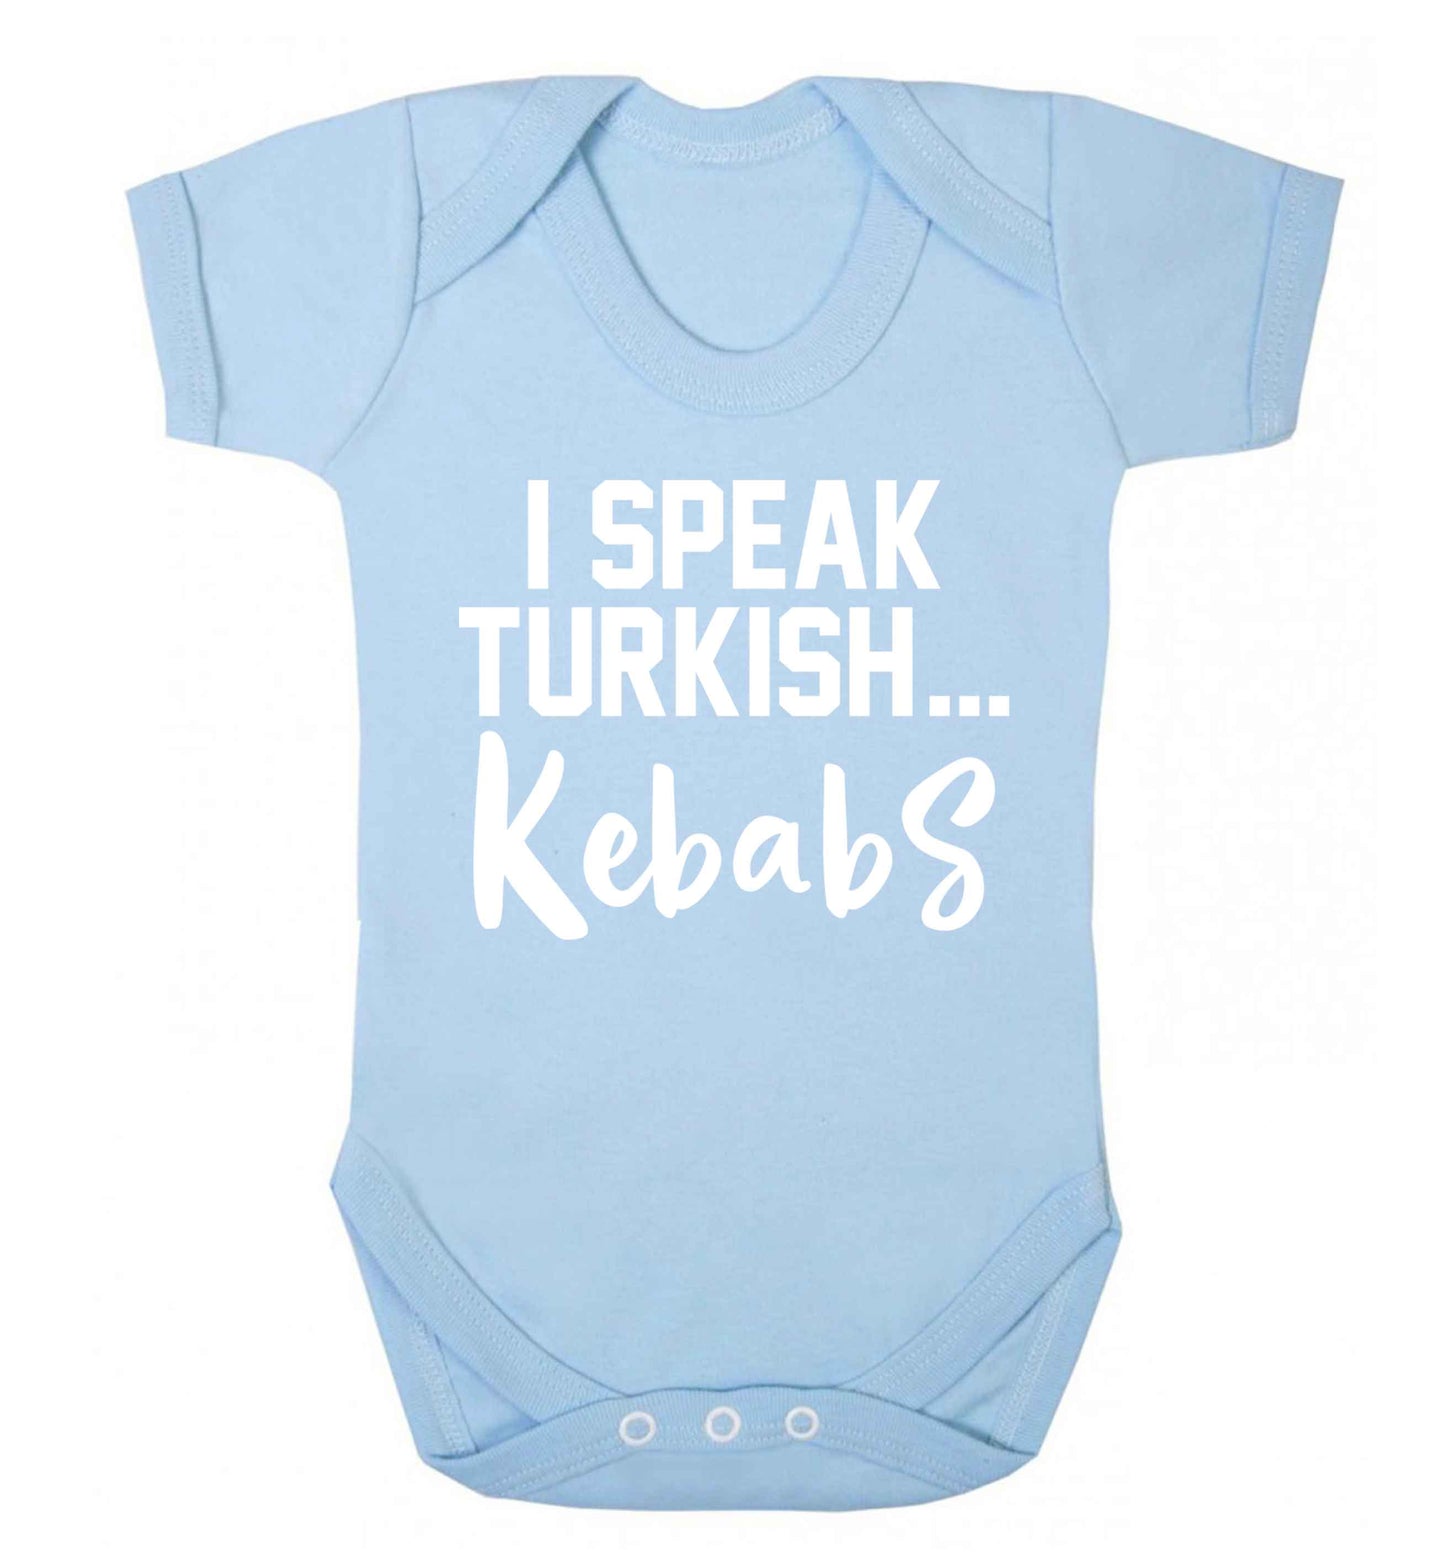 I speak Turkish...kebabs Baby Vest pale blue 18-24 months